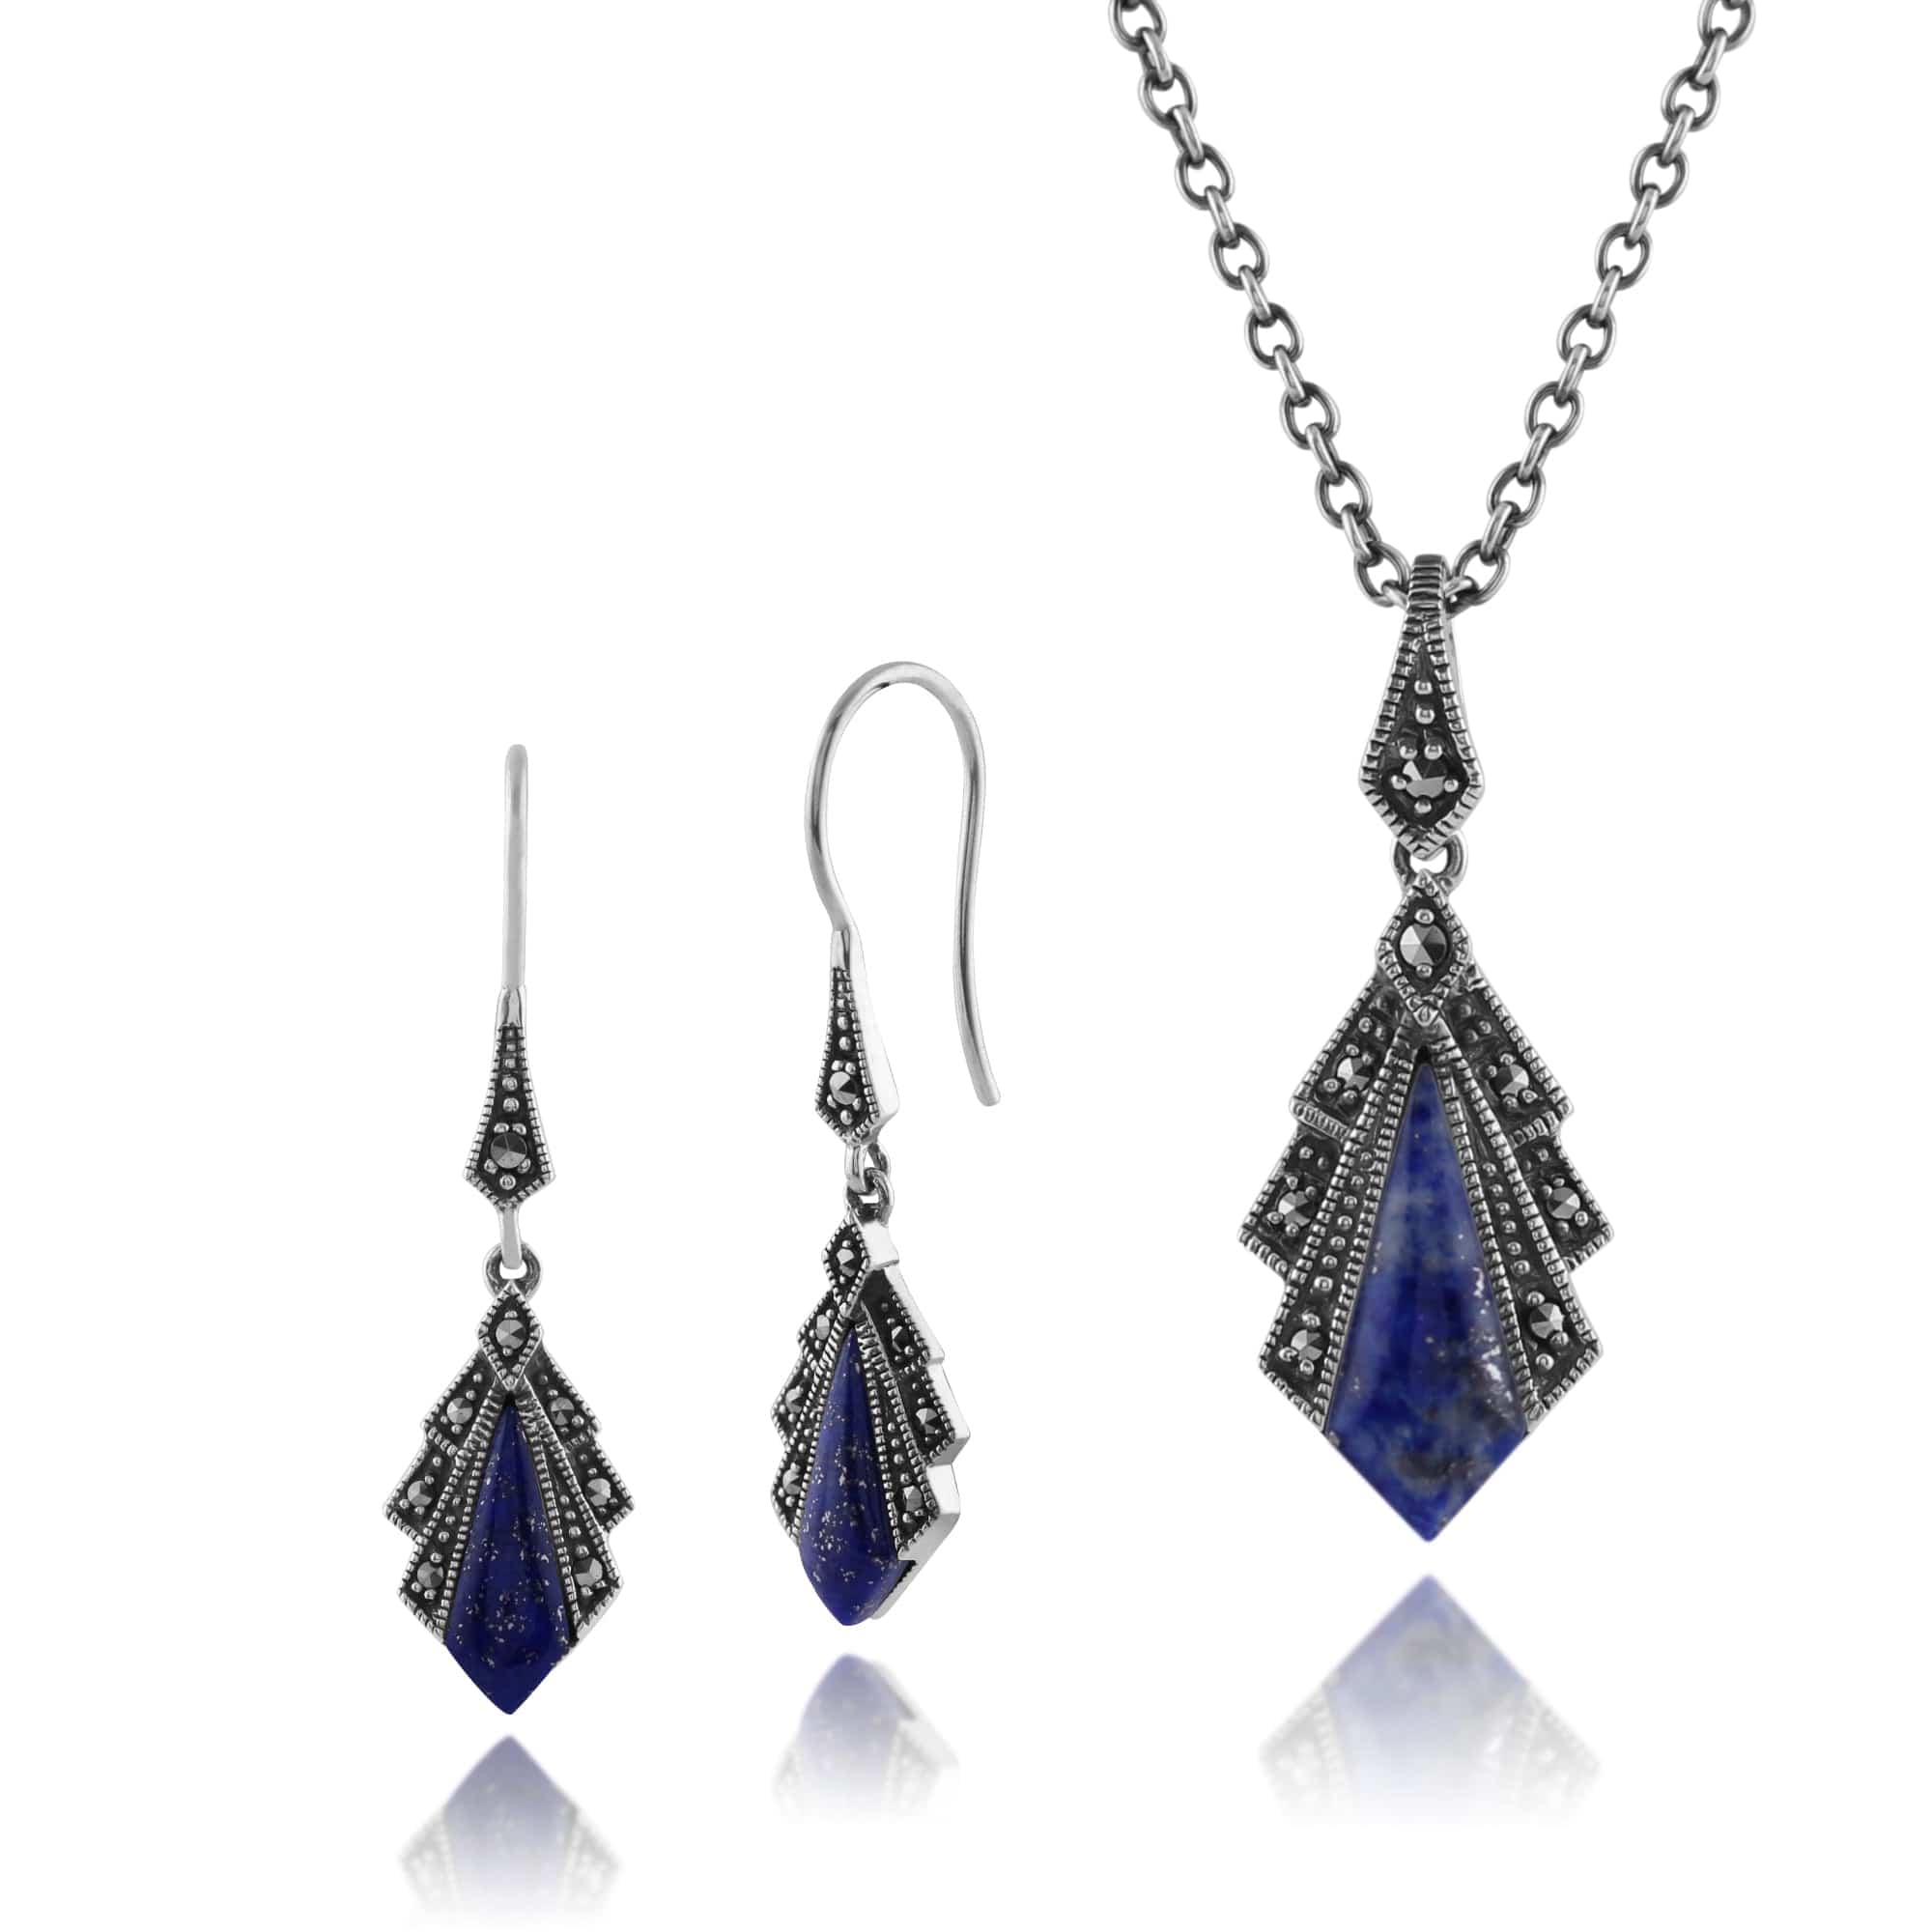 214E823202925-214N658202925 Art Deco Style Style Lapis Lazuli & Round Marcasite Fan Drop Earrings & Pendant Set in 925 Sterling Silver 1